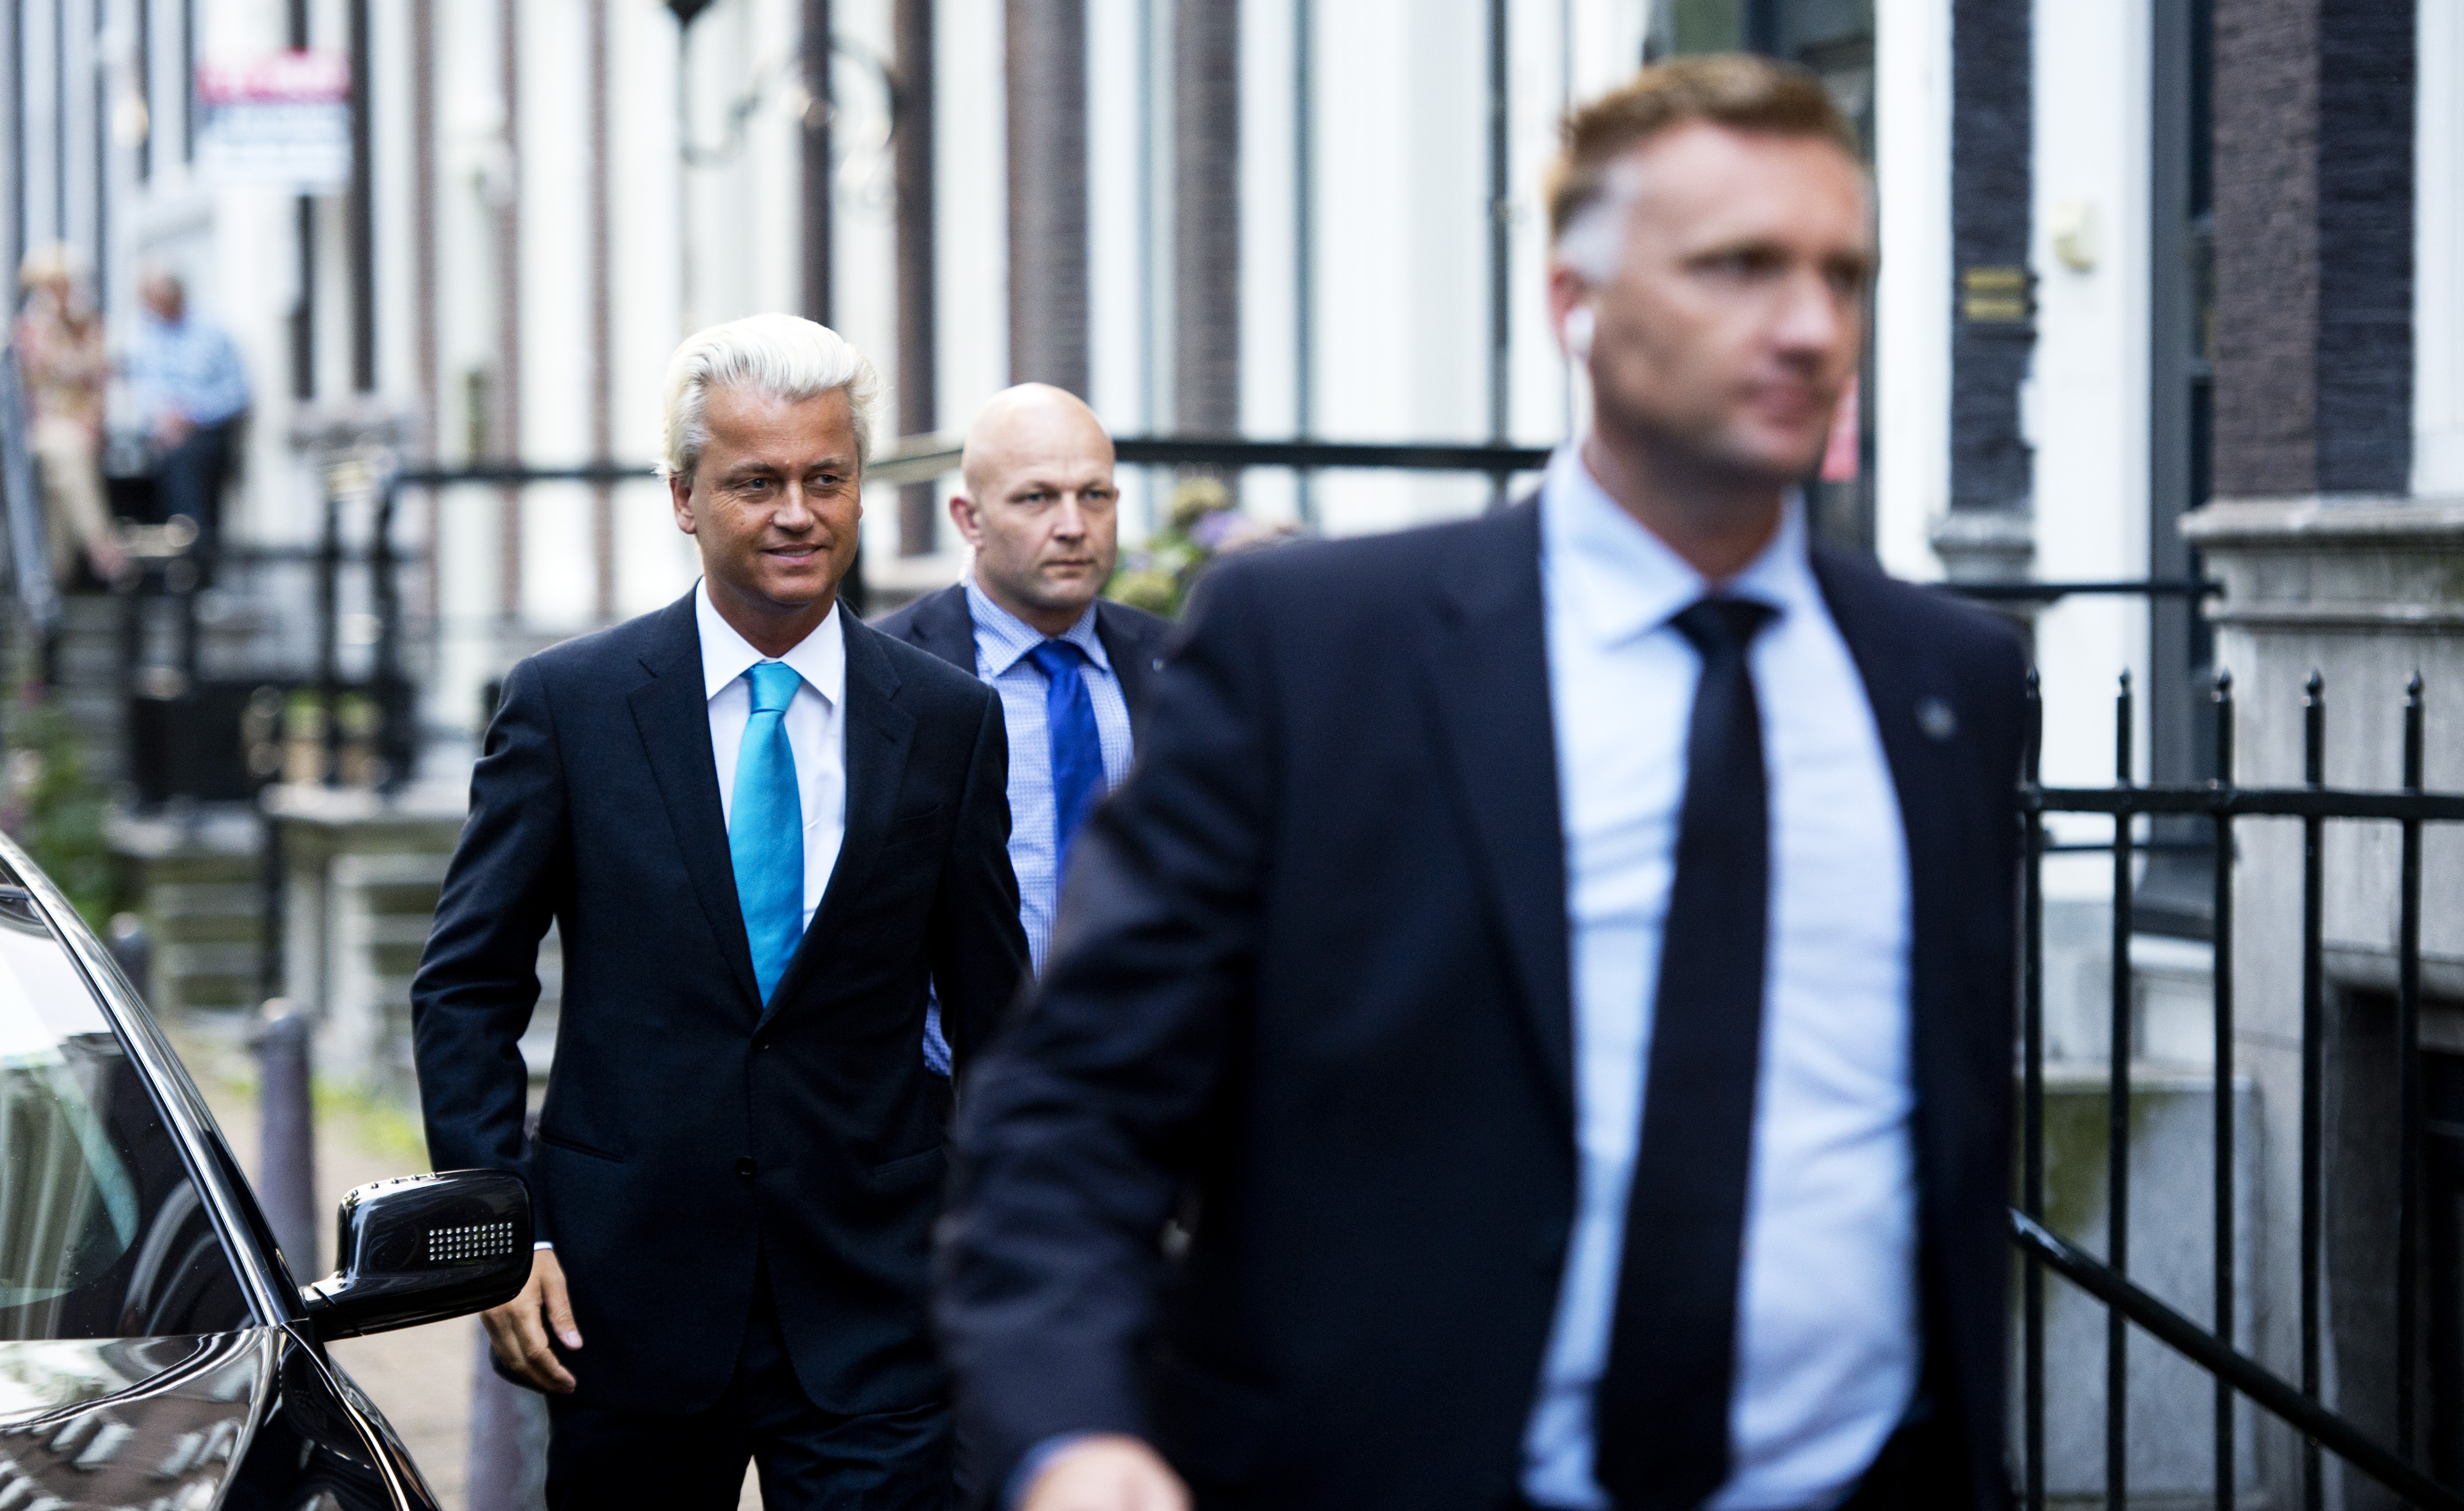 2012-08-26 19:00:01 AMSTERDAM - PVV-leider Geert Wilders komt aan bij de Rode Hoed in Amsterdam voor het verkiezingsdebat. ANP ROBIN UTRECHT